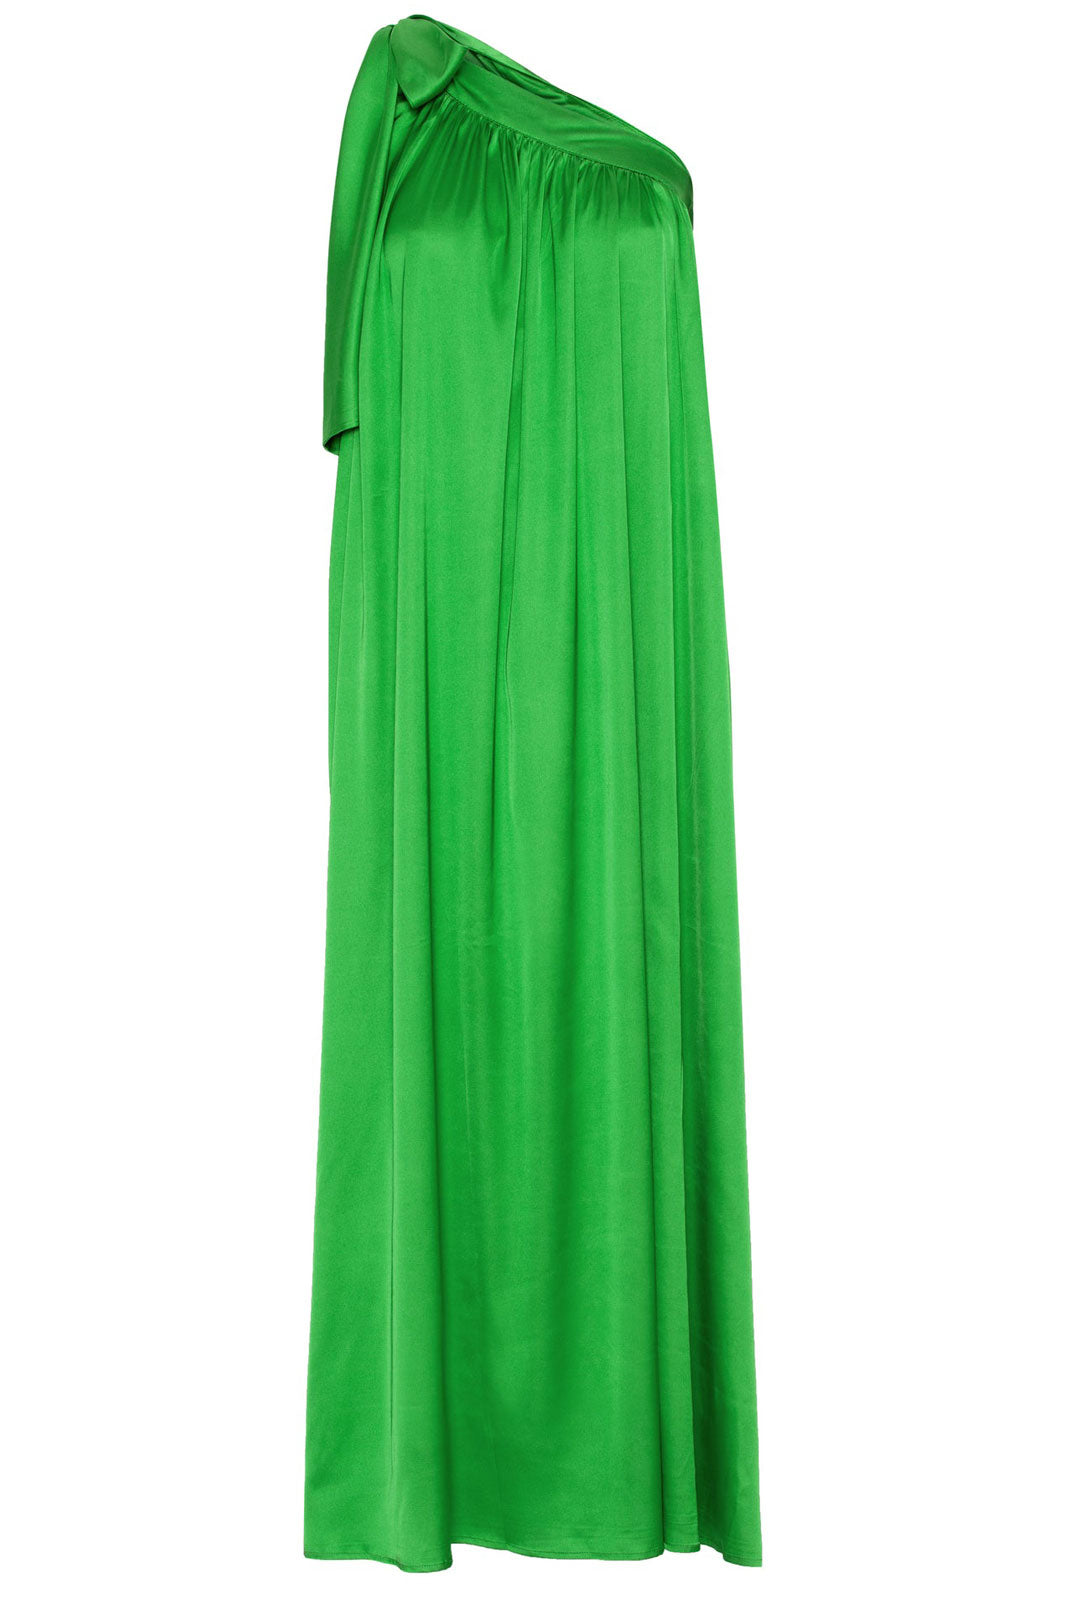 EMM Copenhagen - India Dress - Apple Green Kjoler 